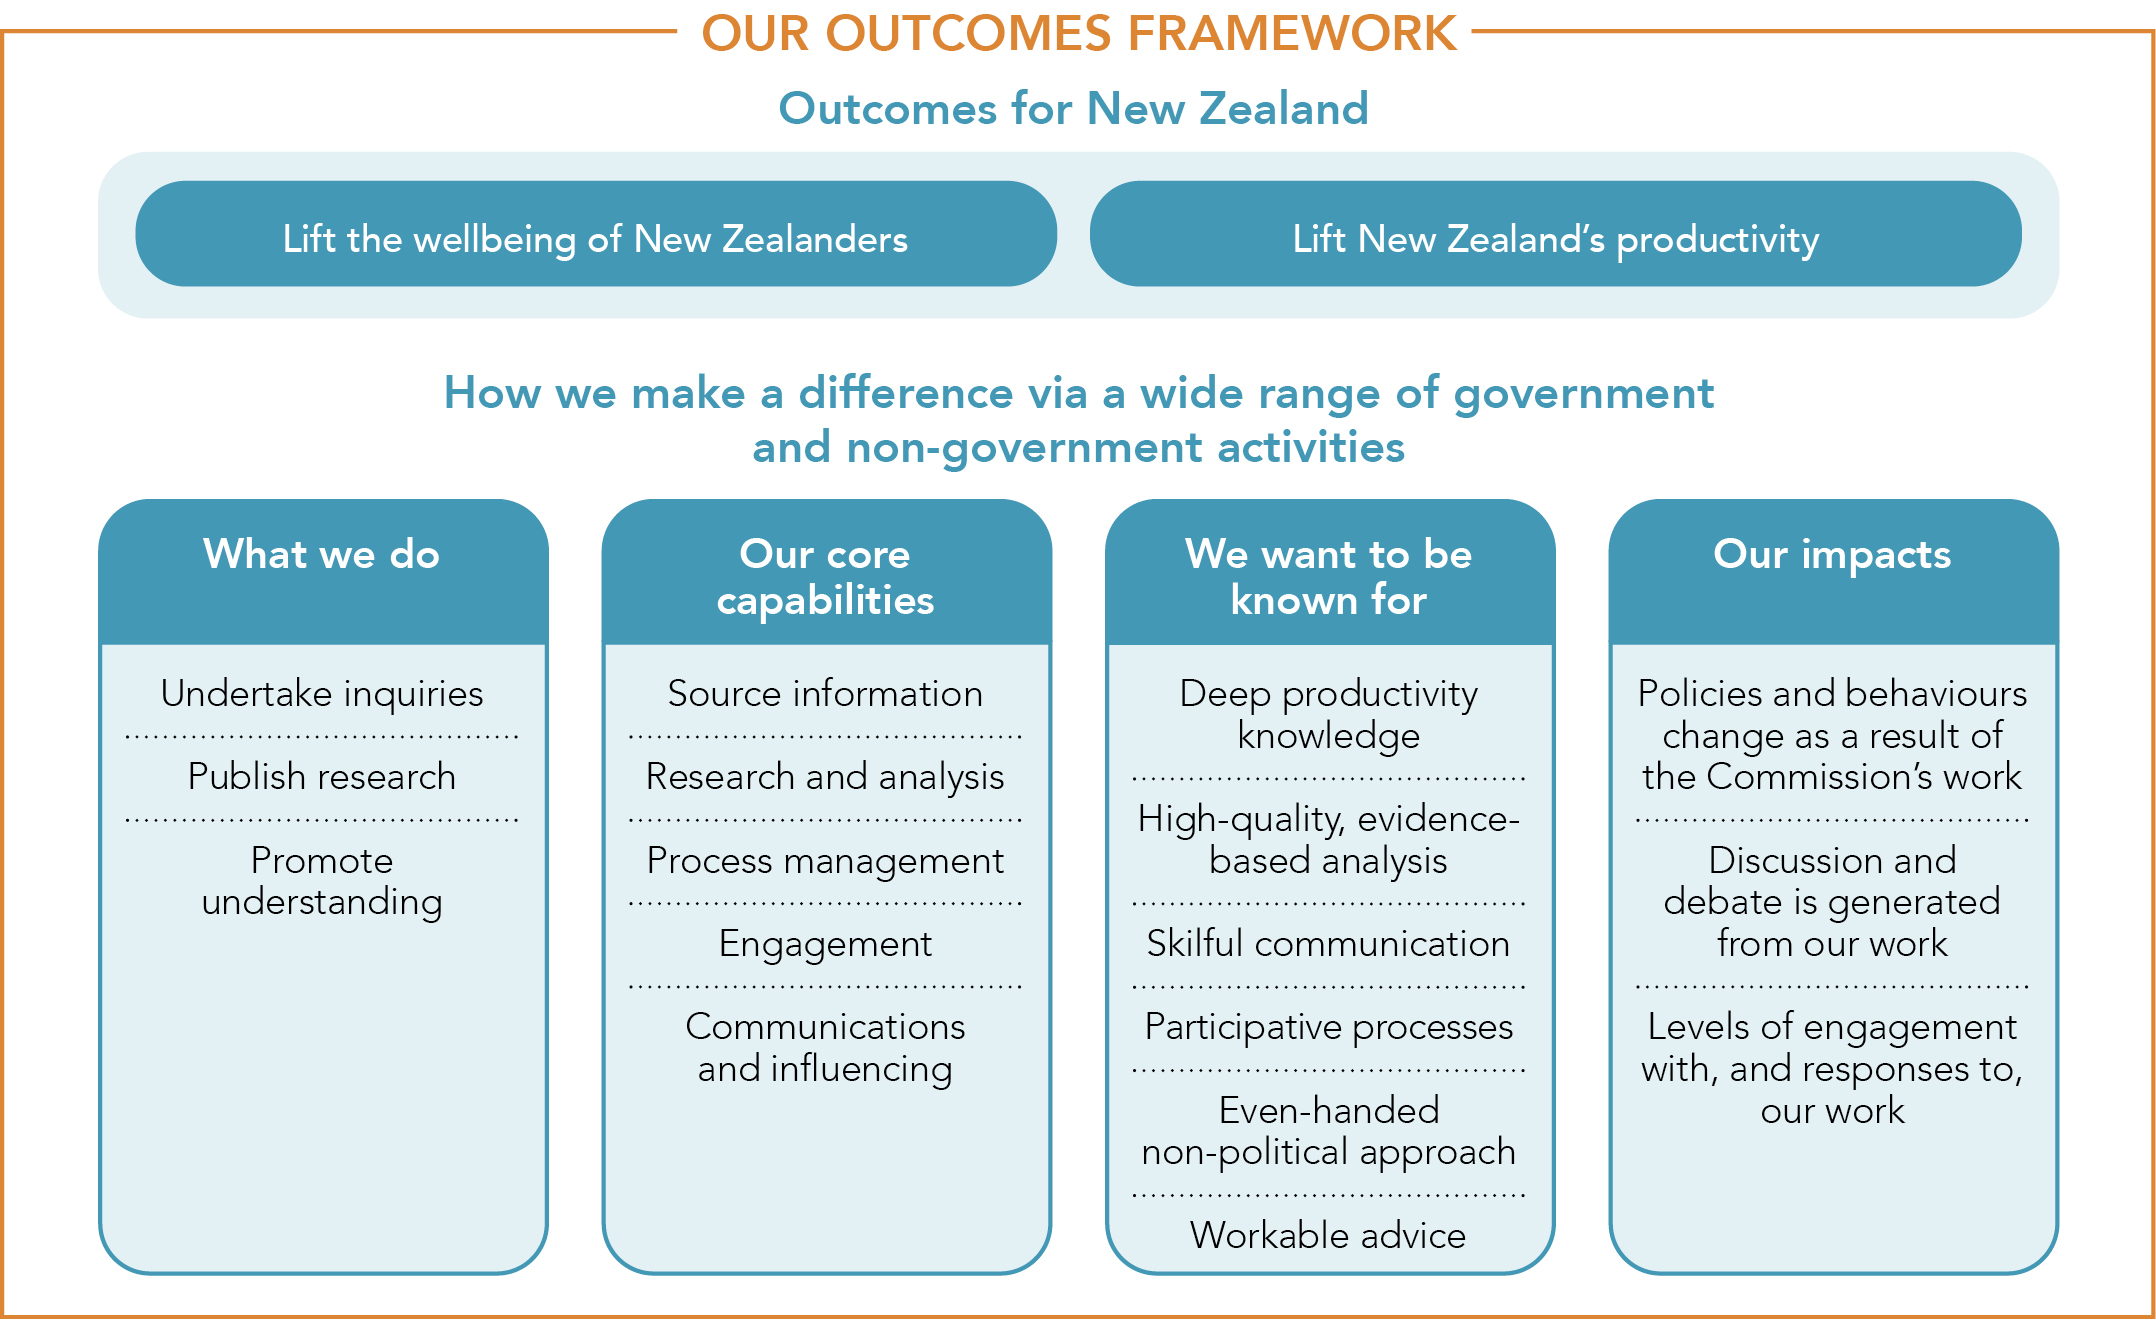 Our outcomes framework diagram